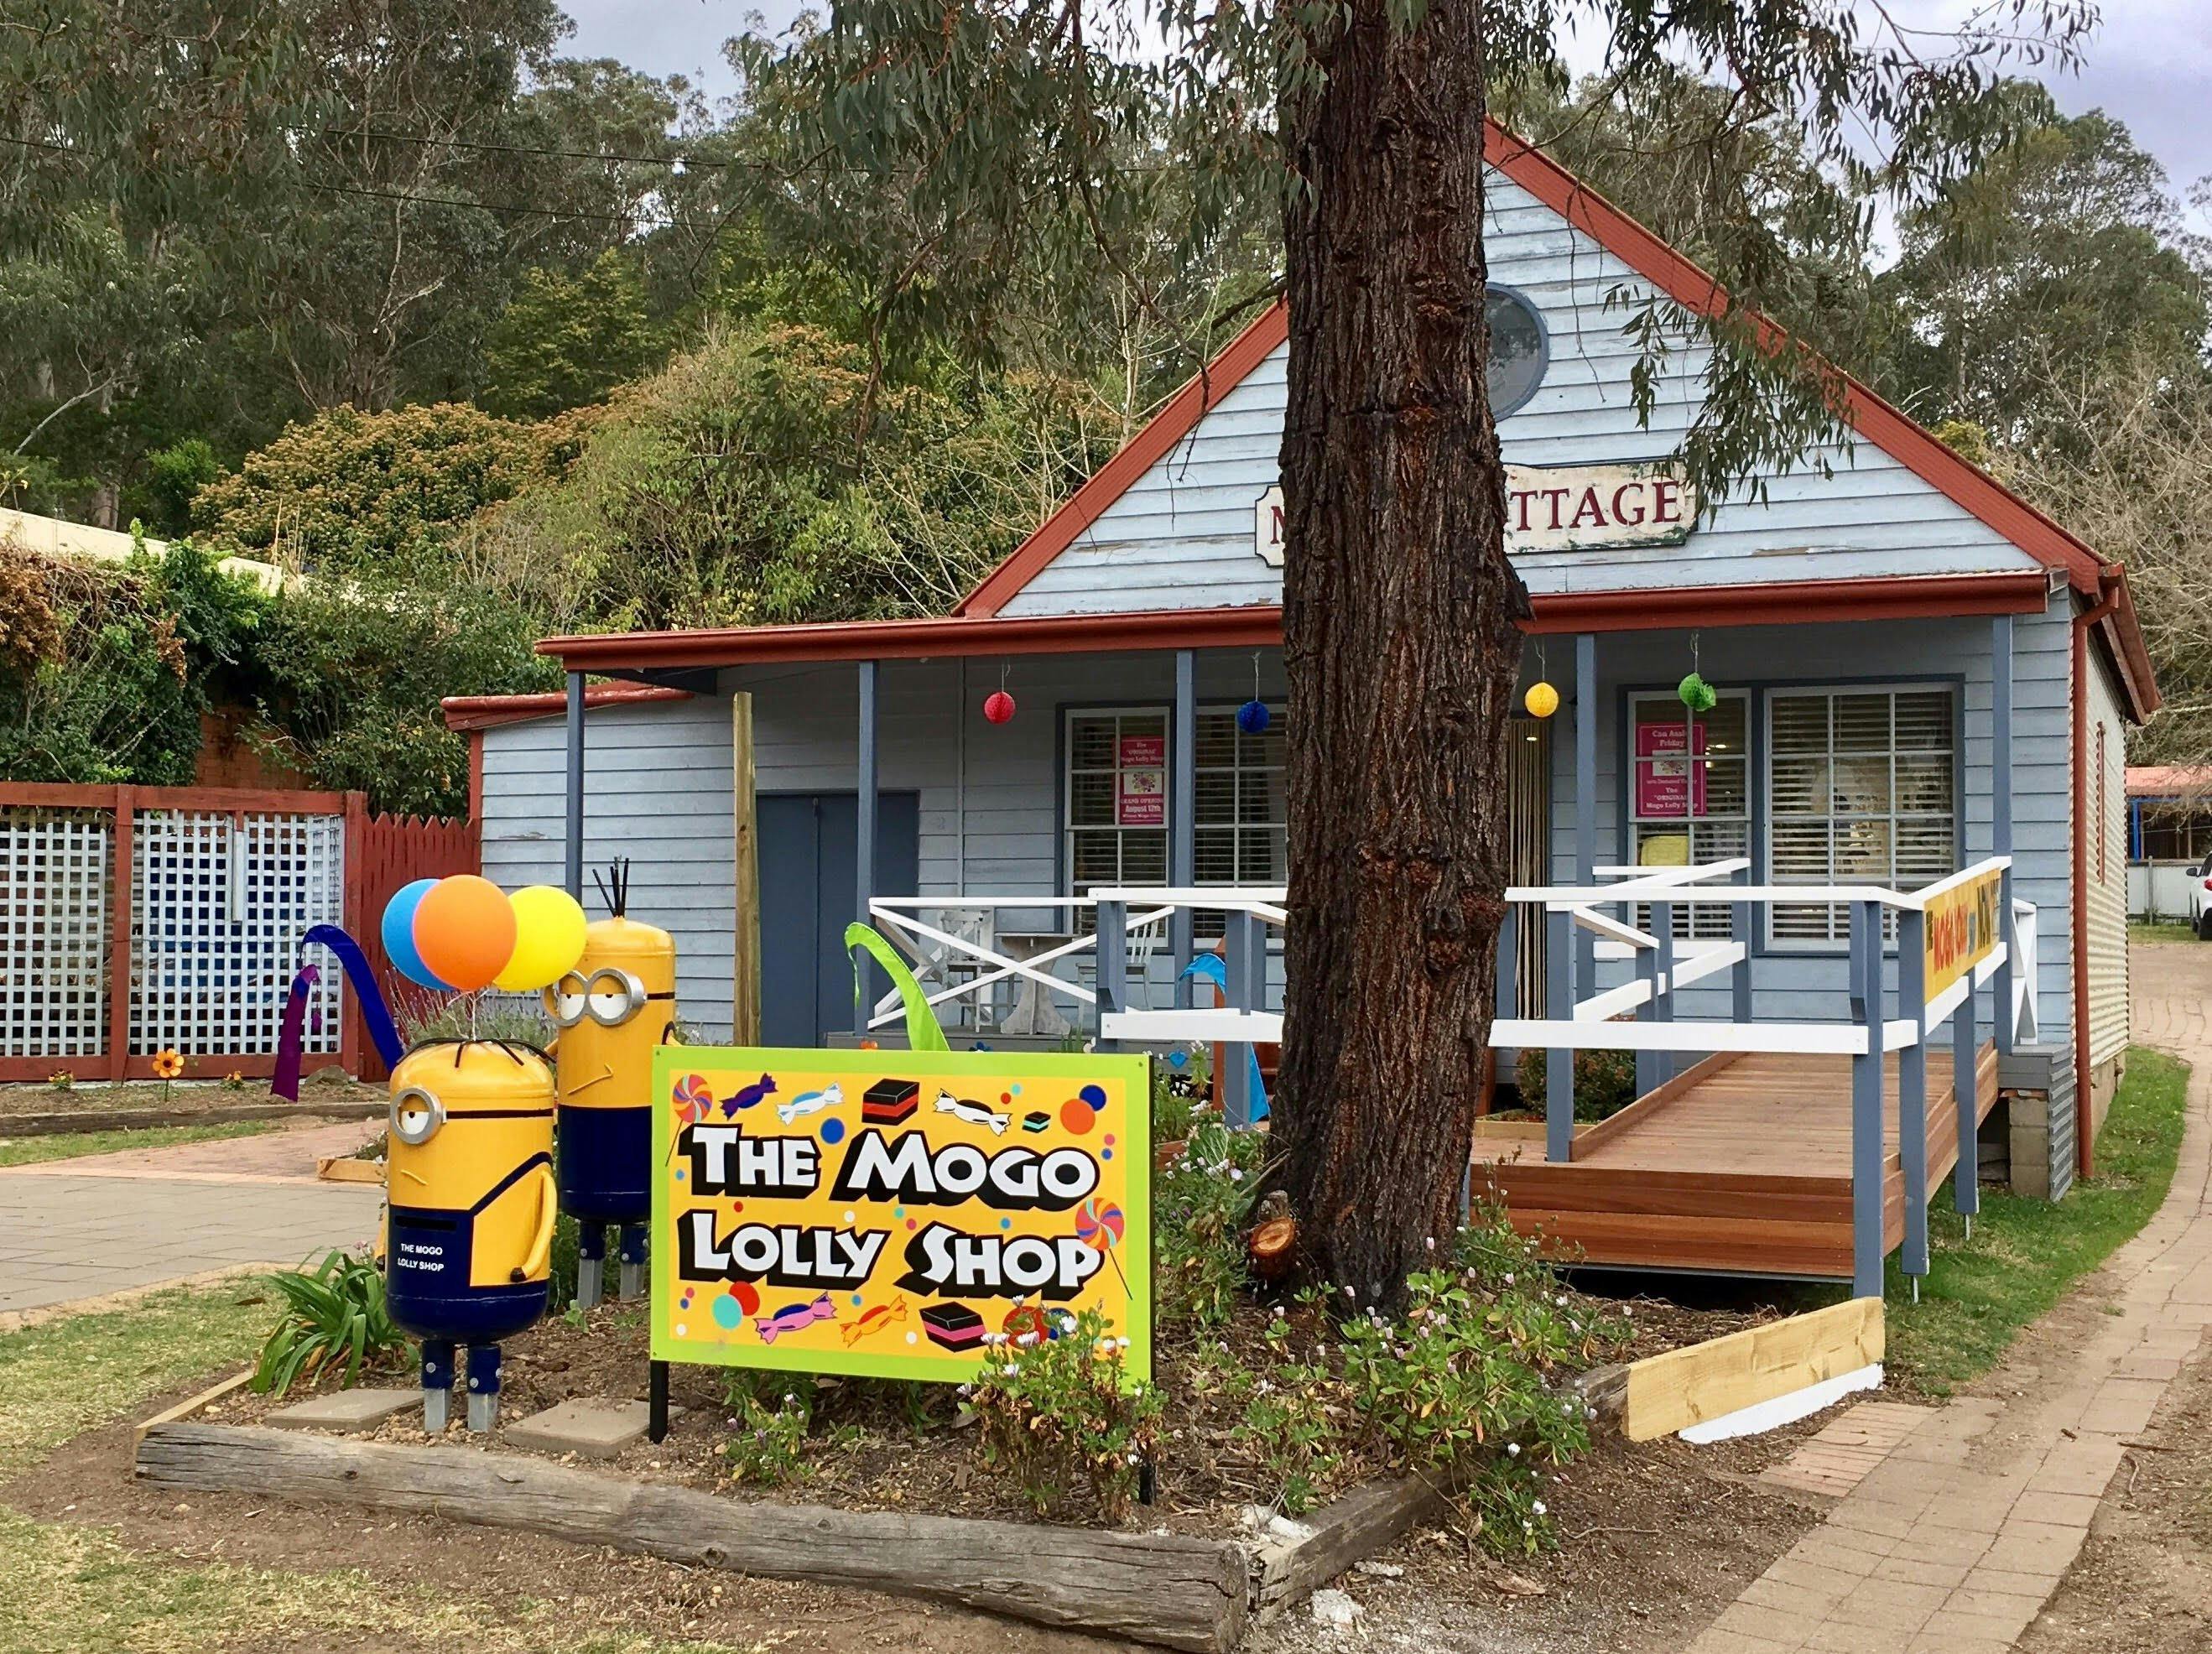 The Mogo Lolly Shop